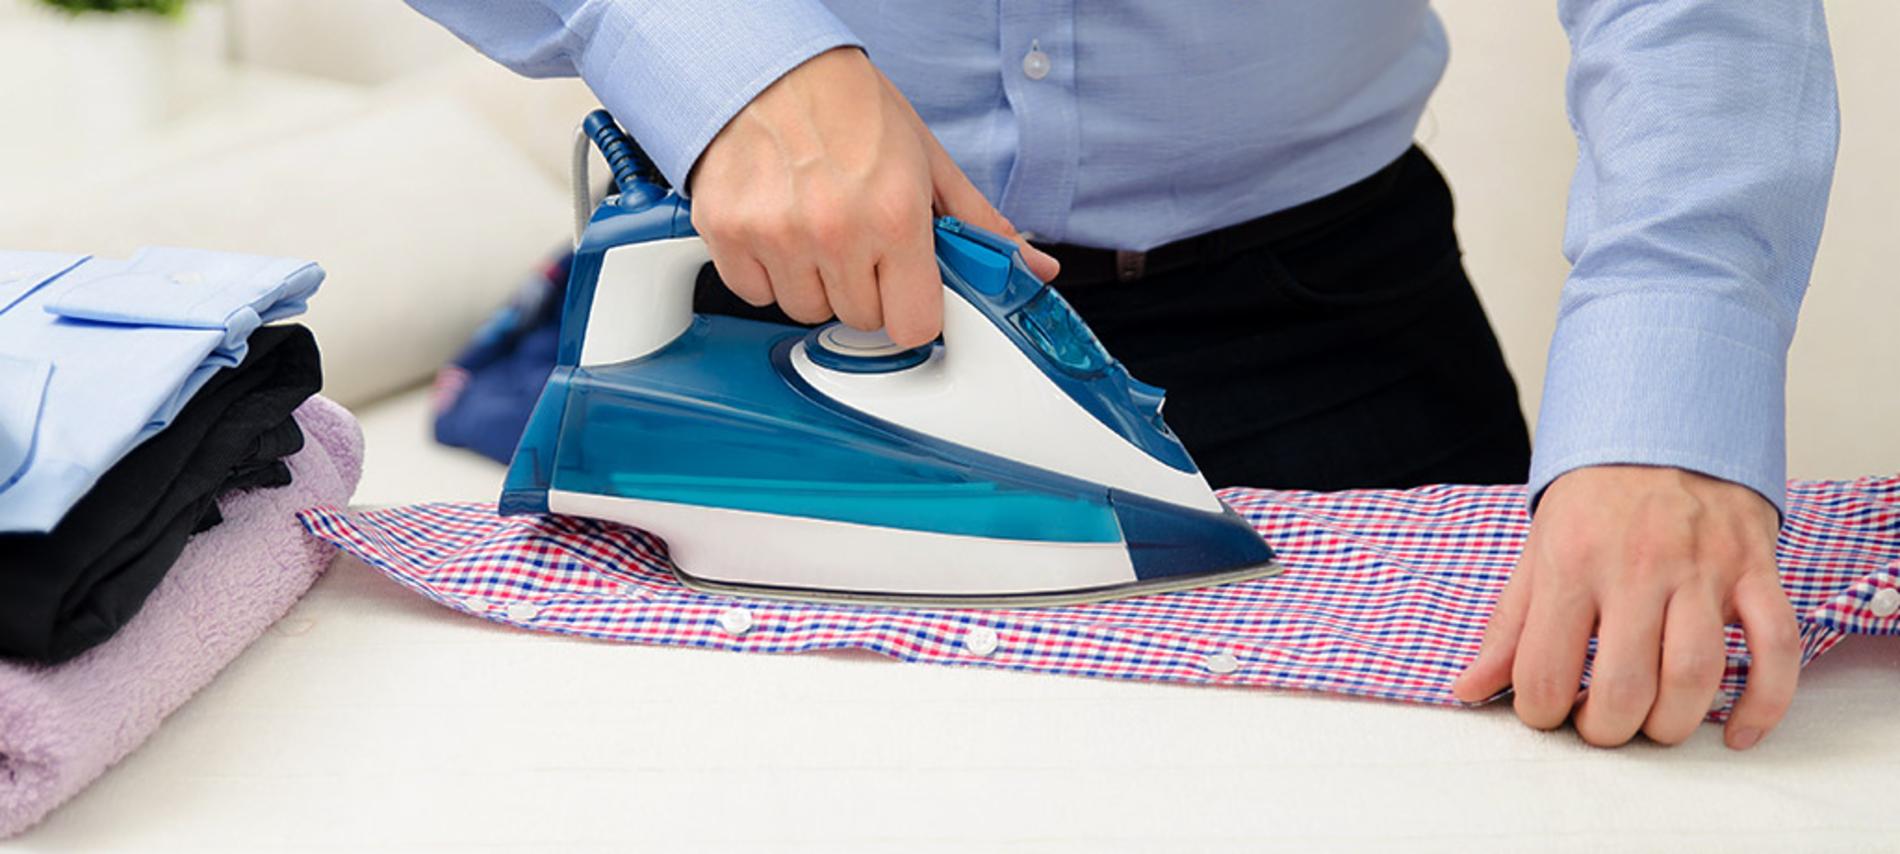 Cómo planchar una camisa